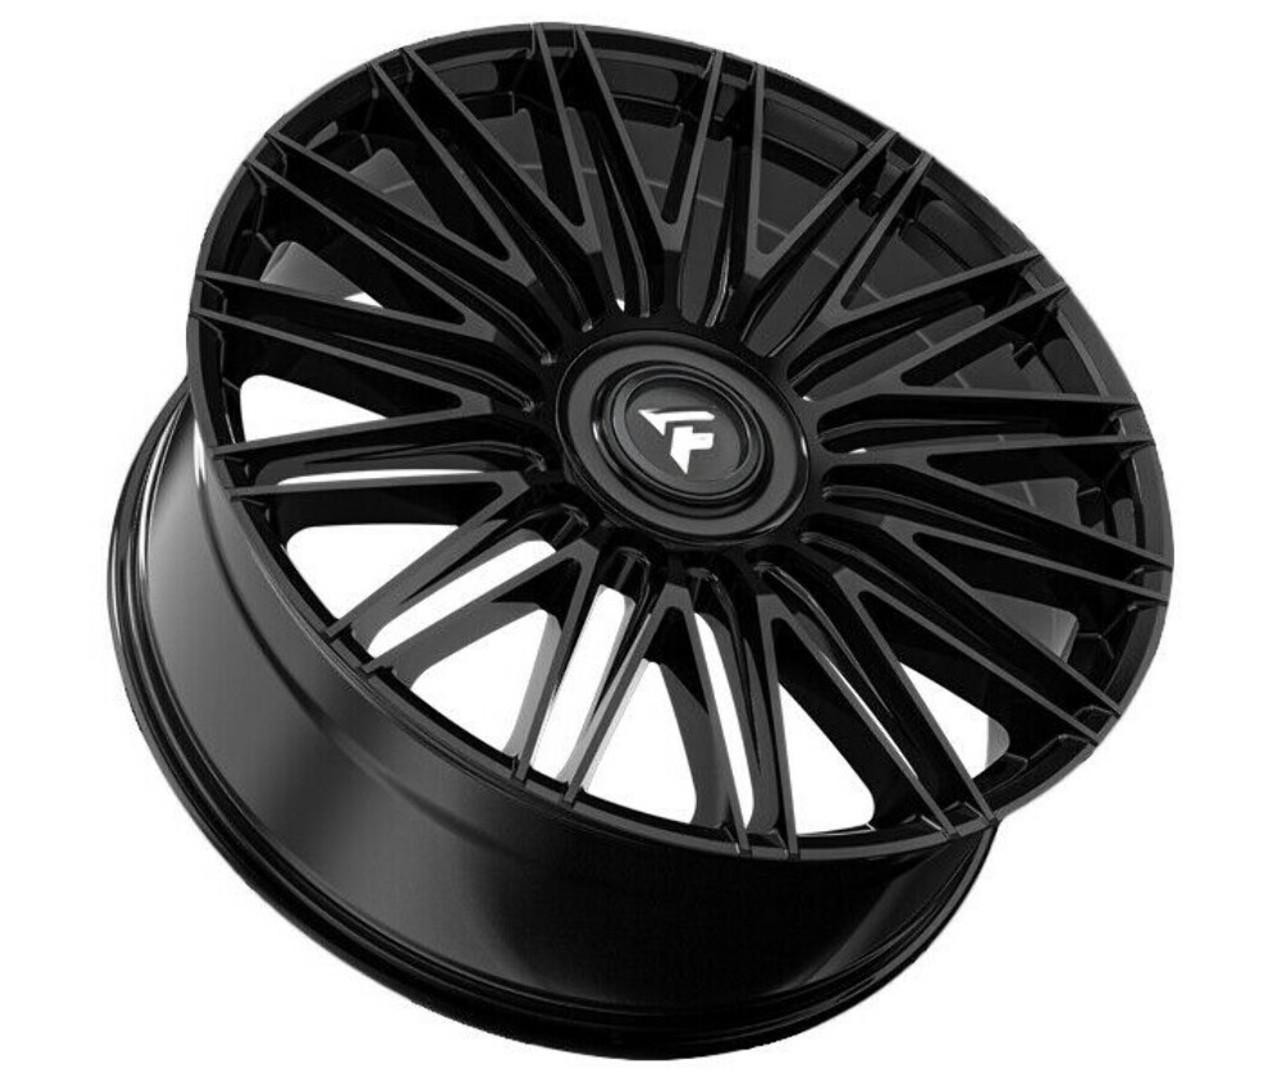 22" Fittipaldi Street FS369B Gloss Black 22x9.5 Wheel 5x112 5x120 30mm Rim